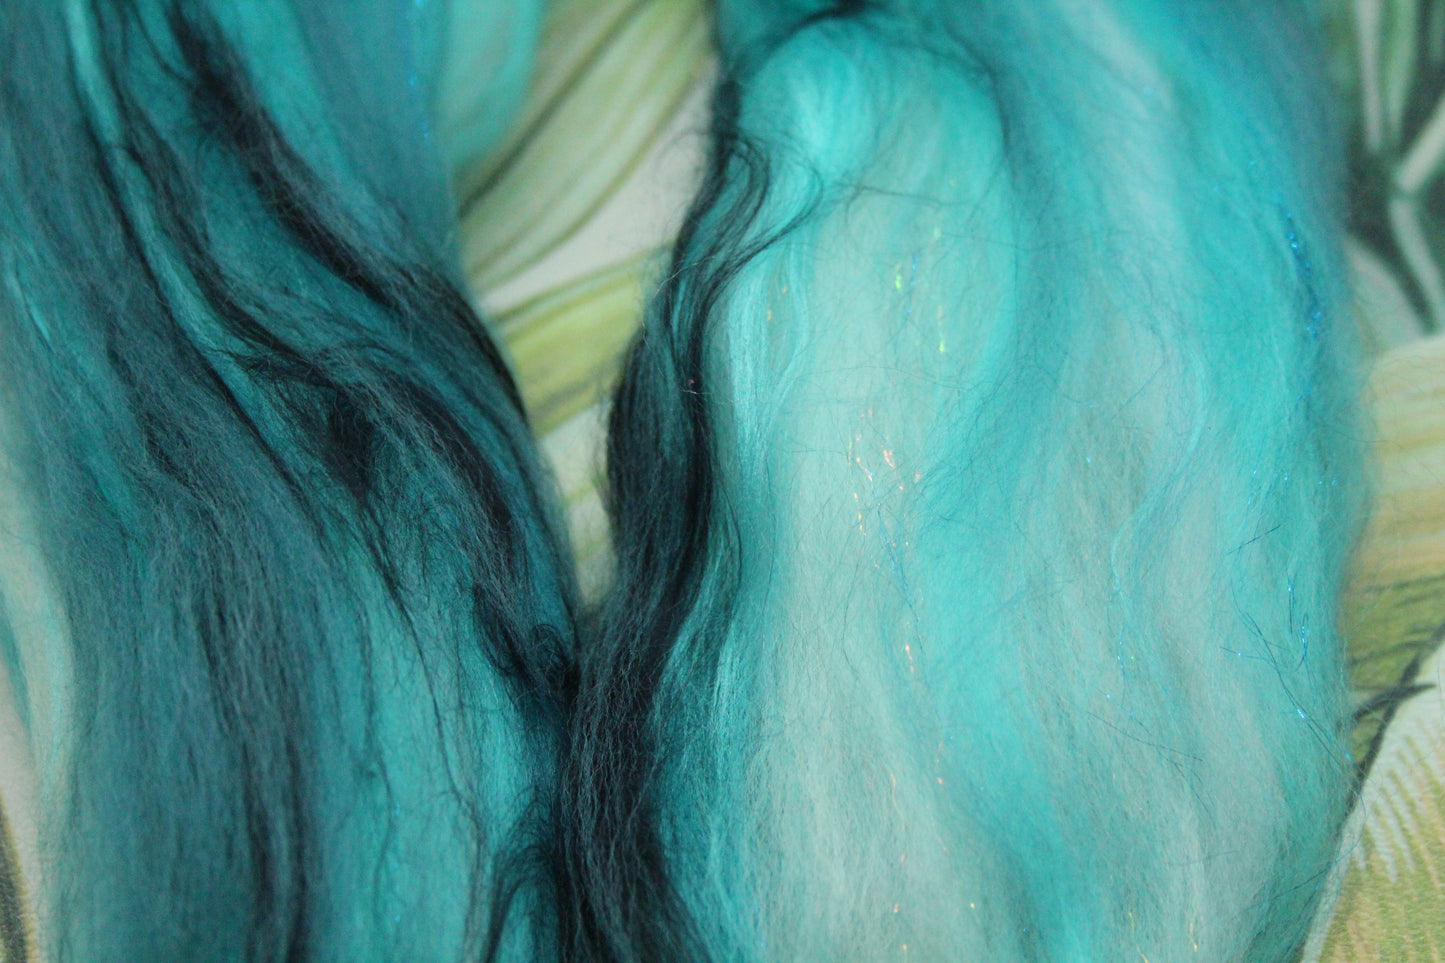 Merino Wool Blend - Turquoise White - 16 grams / 0.5 oz  - Fibre for felting, weaving or spinning